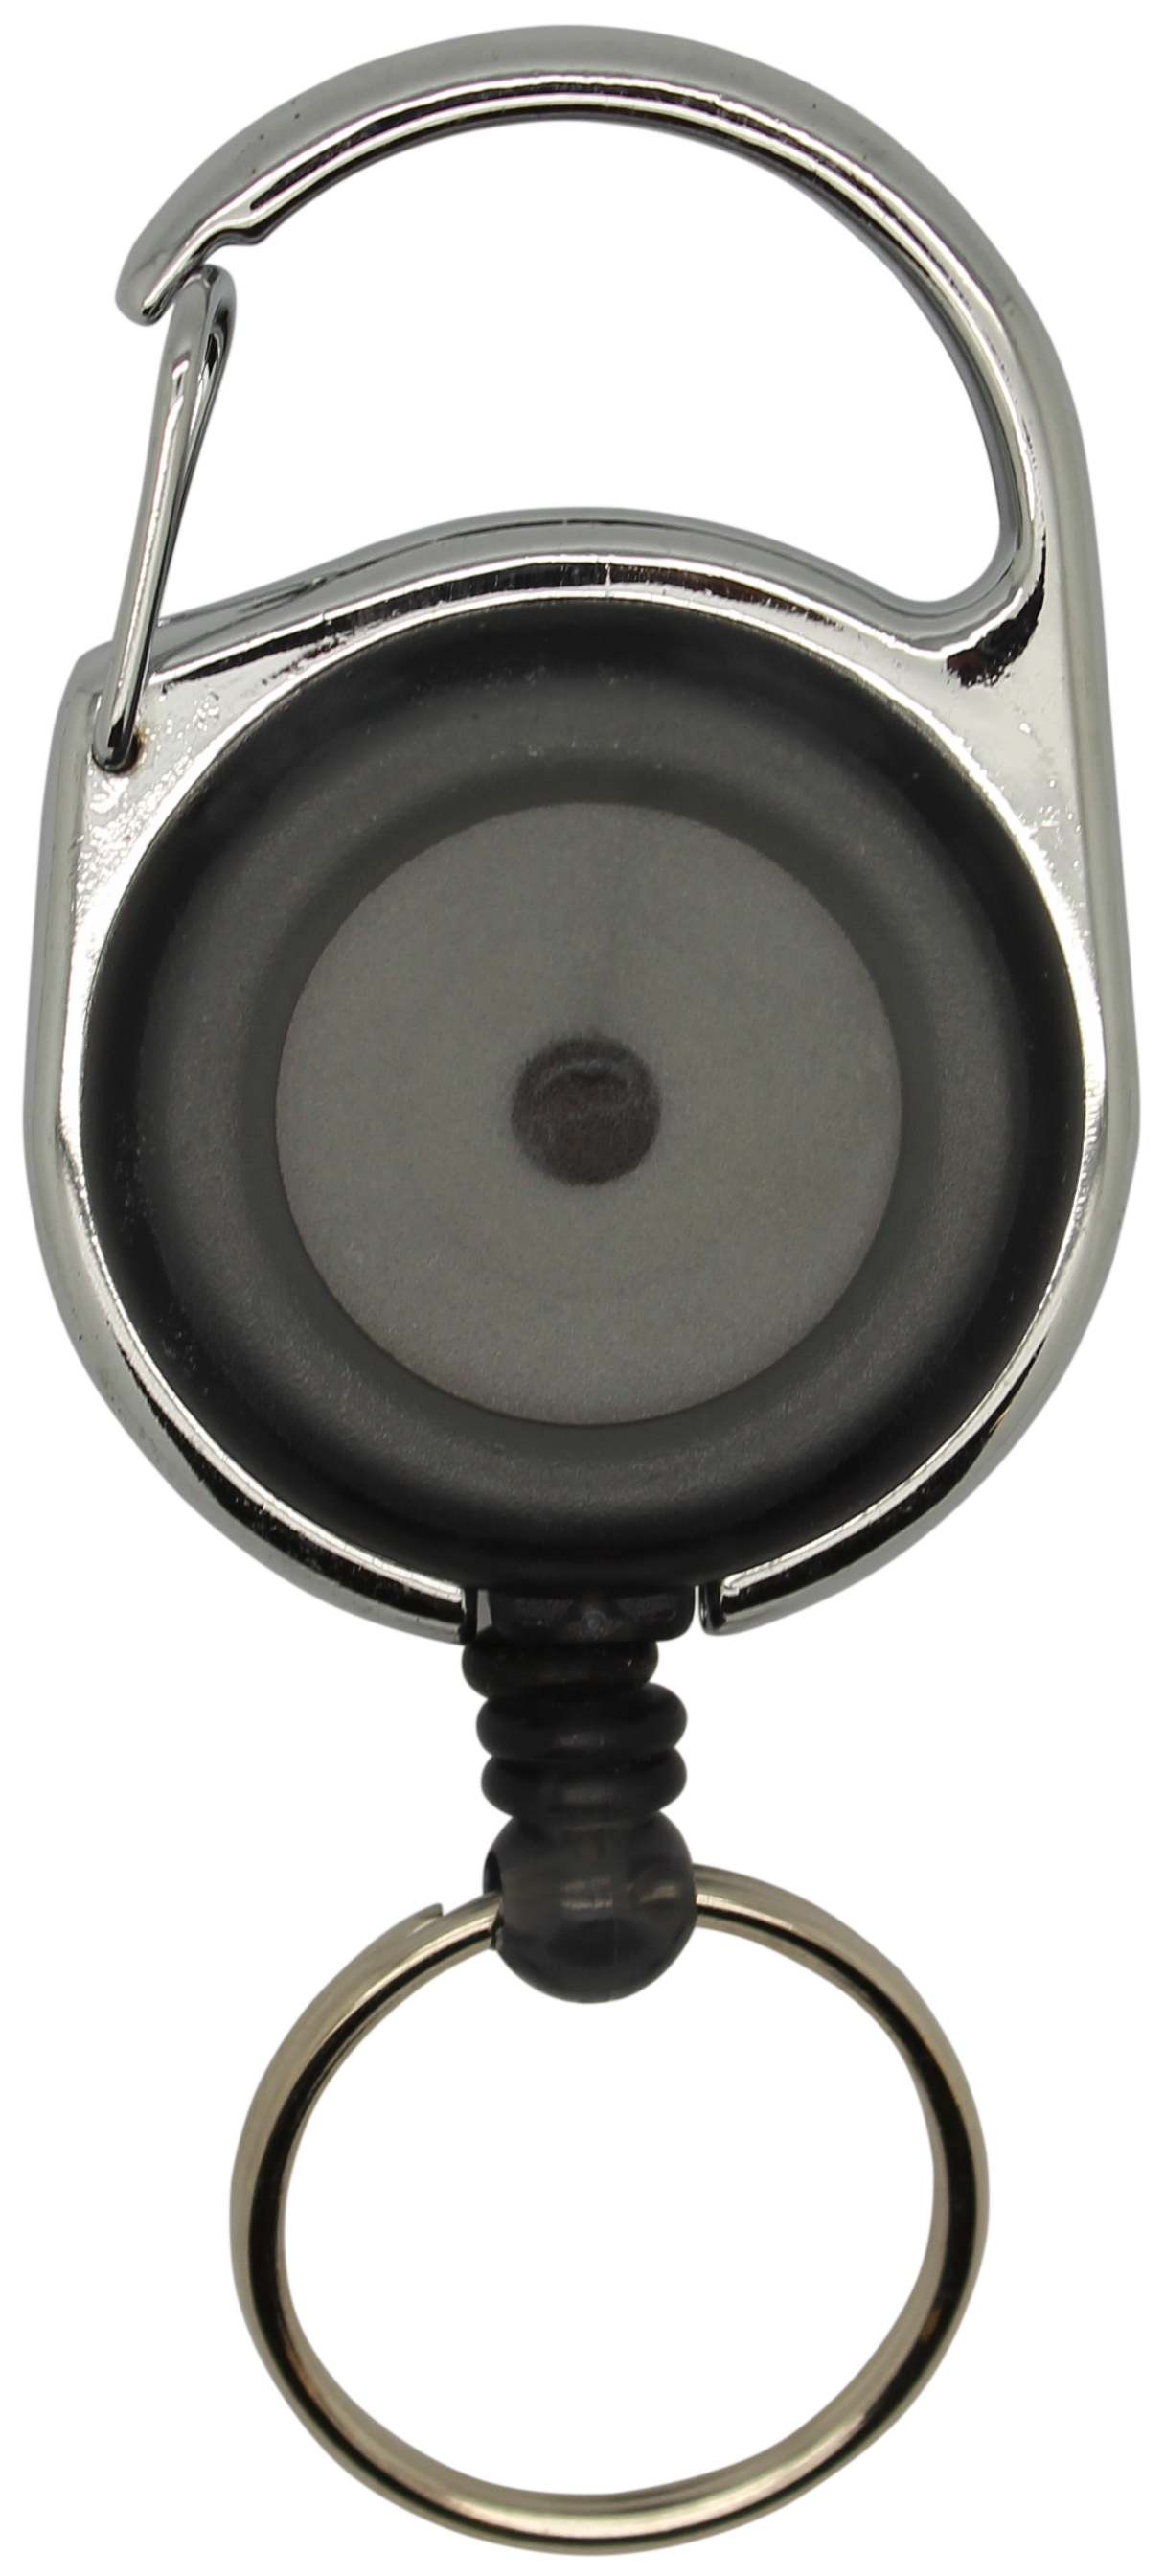 Jojo rund, transparent schwarz, Karabinerhaken Schlüsselring, Nylonschnur 60 cm 